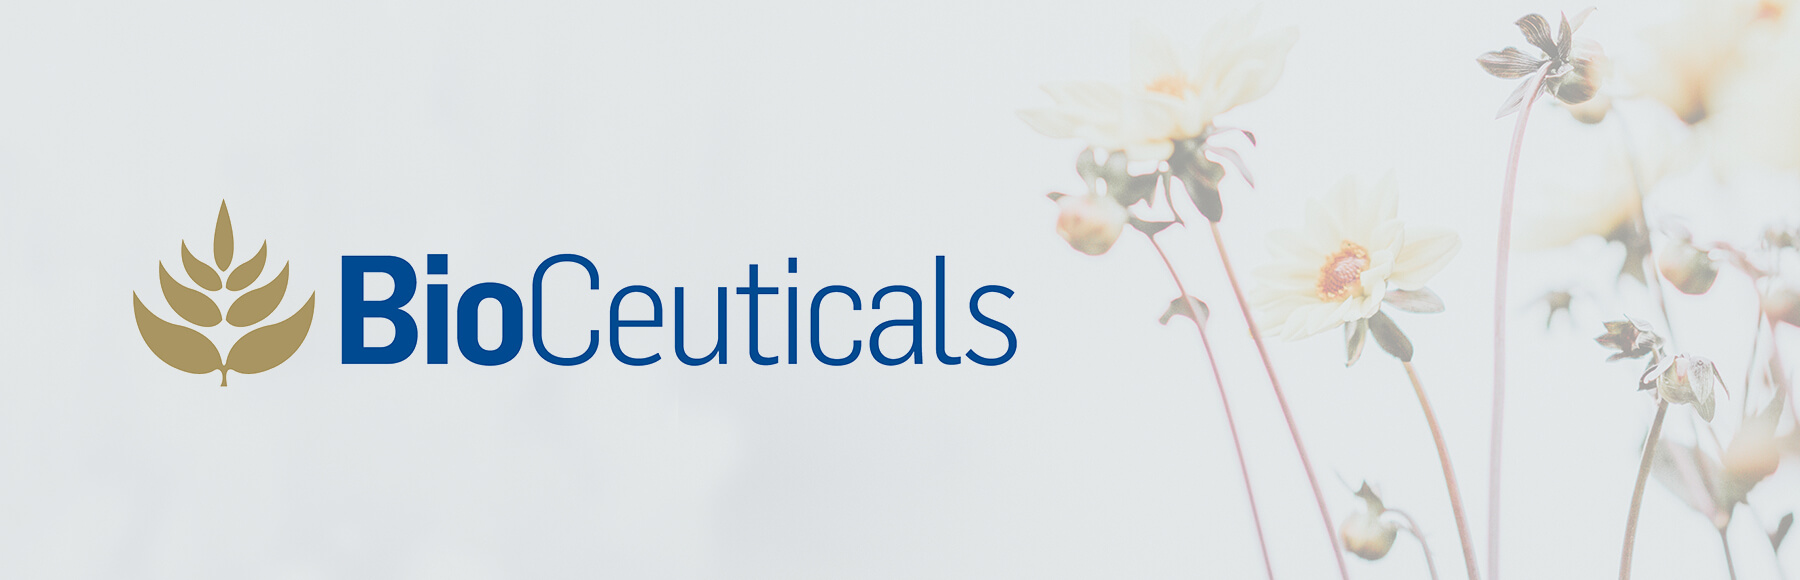 bioceuticals-banner.jpg